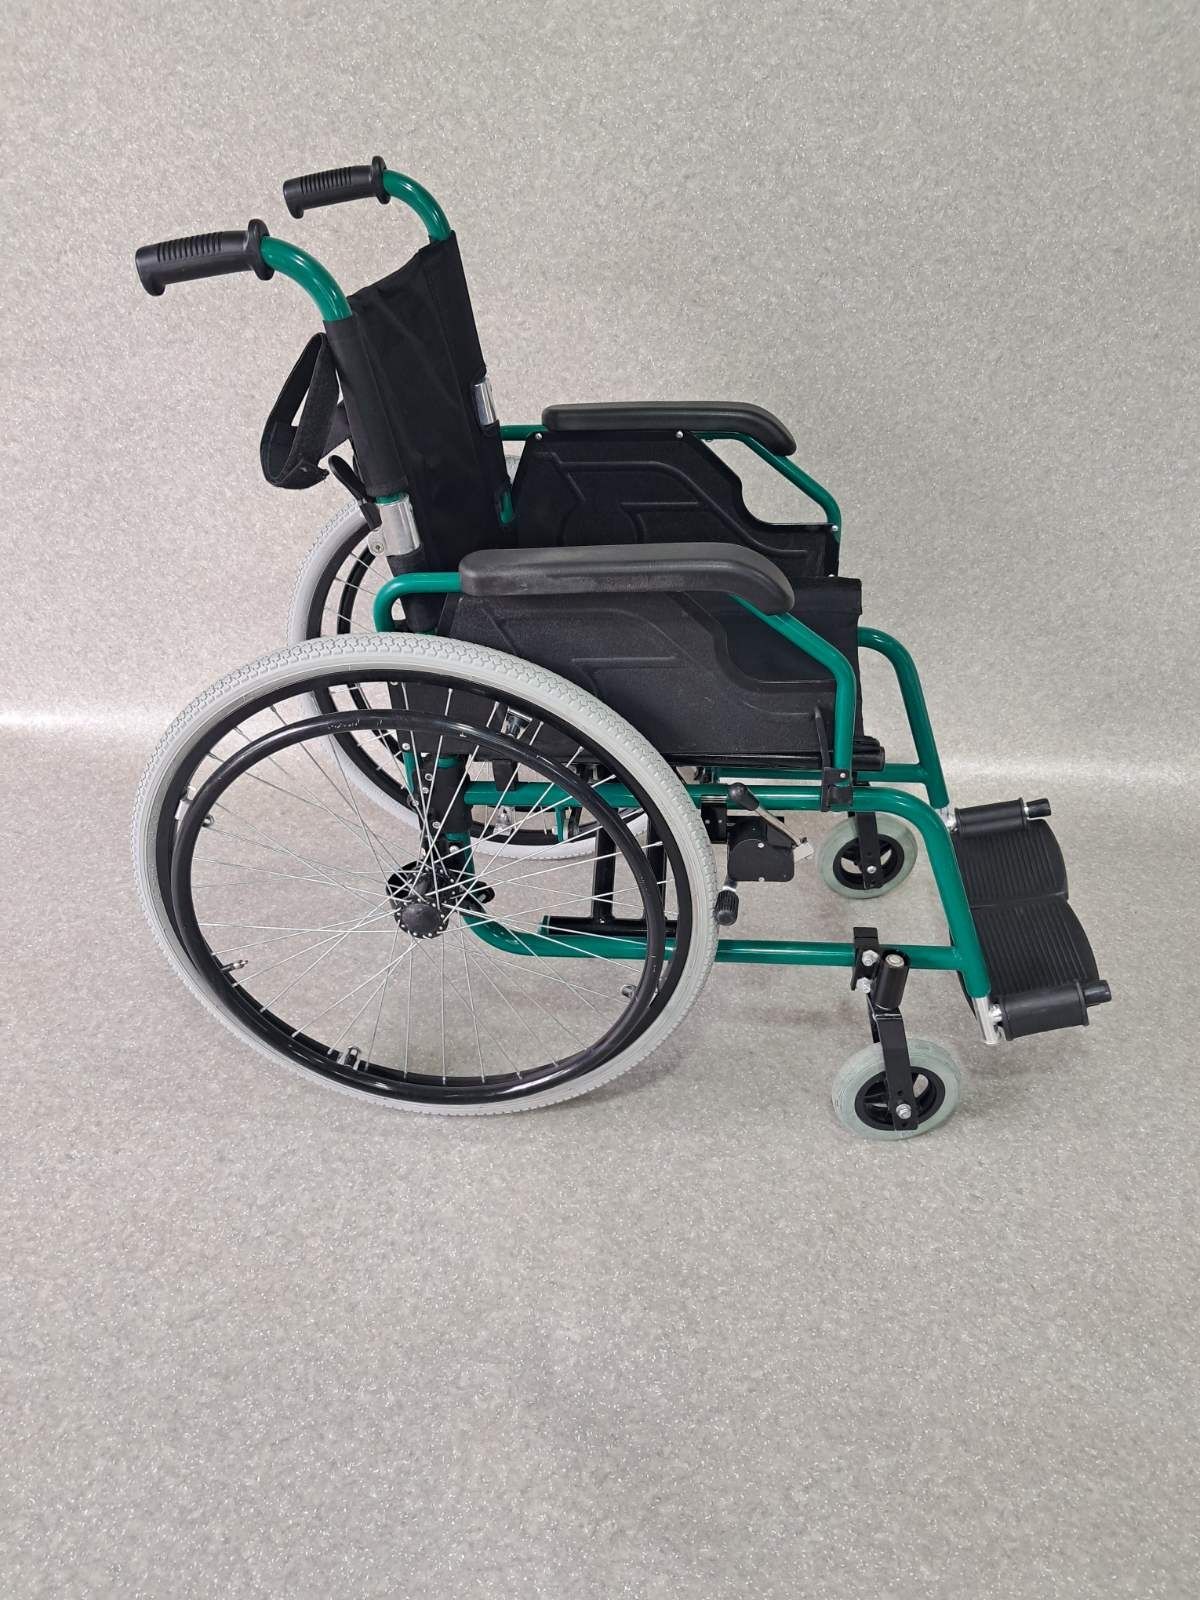 Бесплатная доставка по городу инвалидная коляска крісло візок каляска